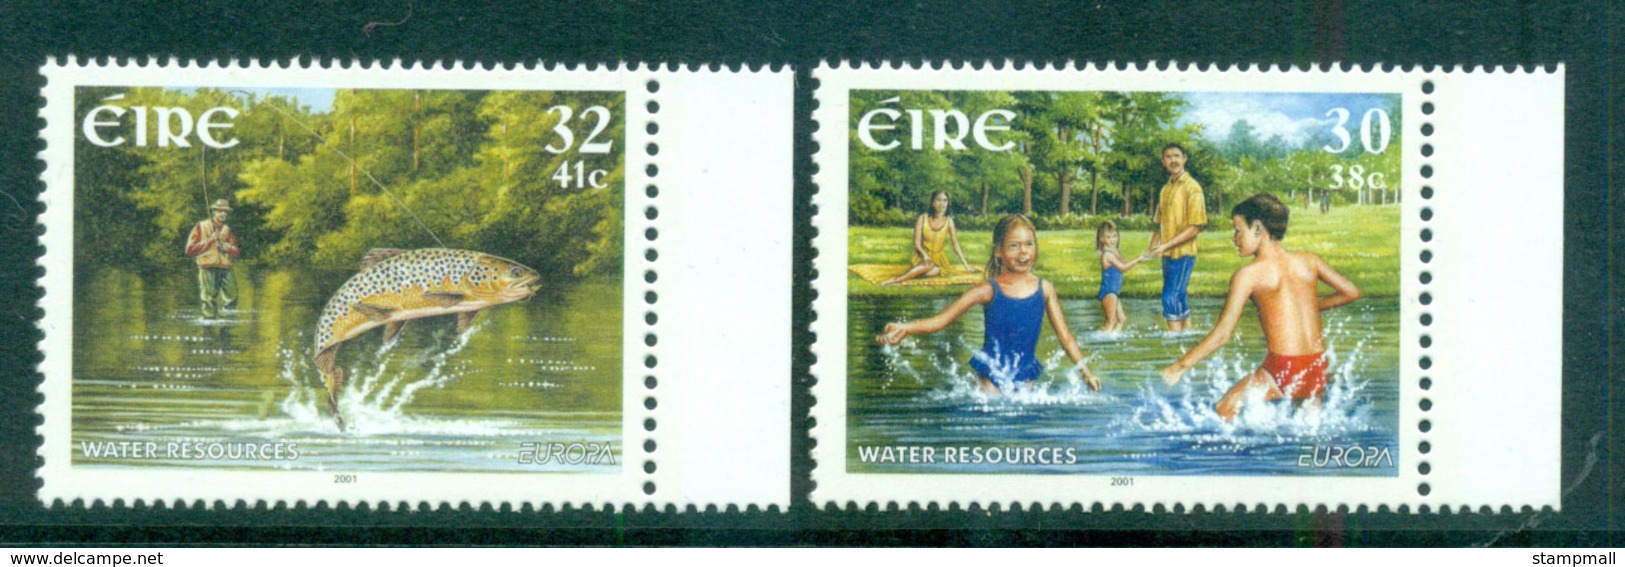 Ireland 2001 Europa, Water Rsources MUH Lot66606 - Ongebruikt